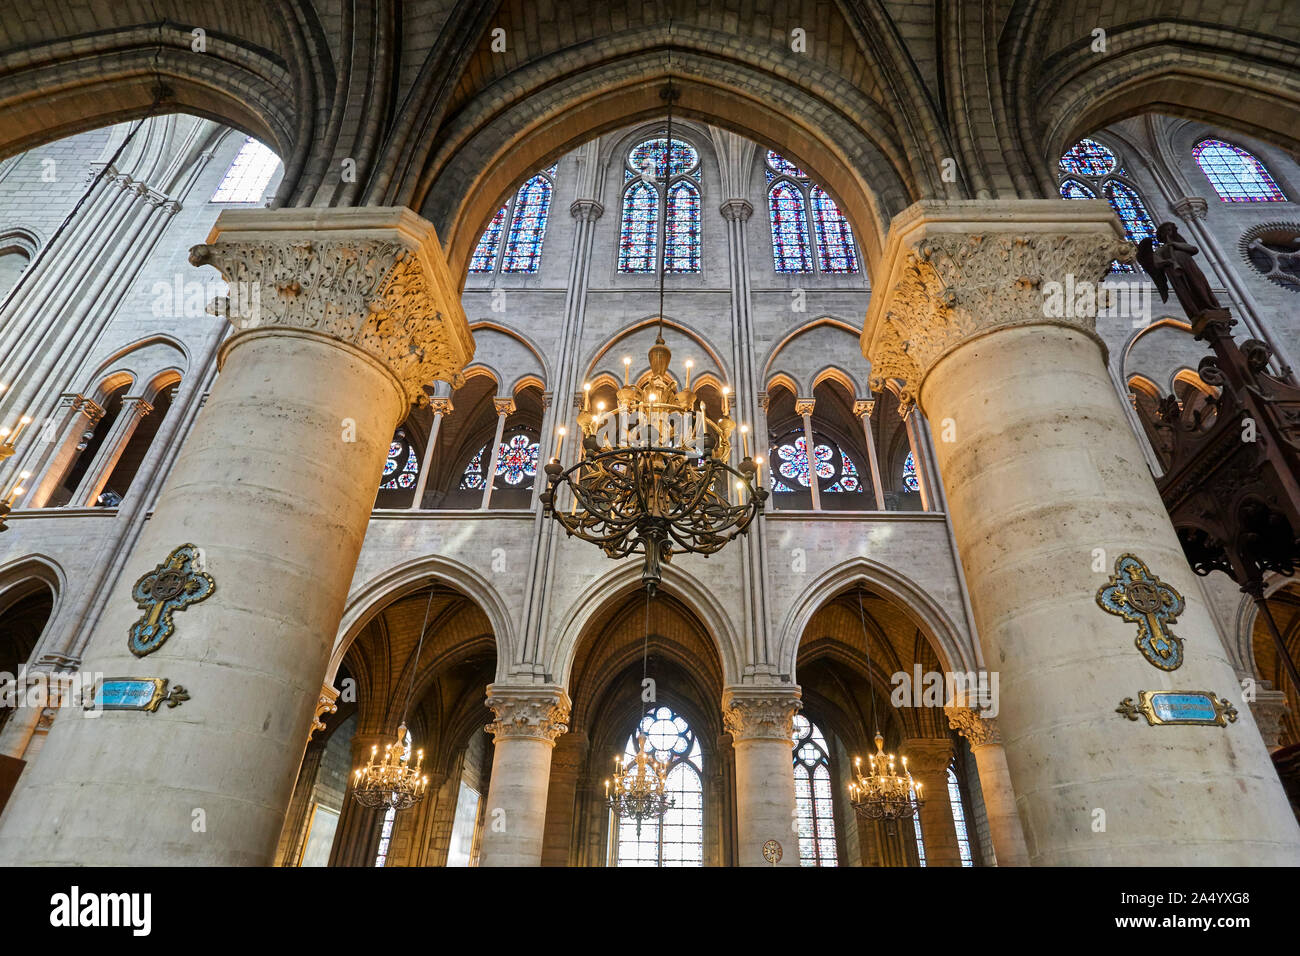 Interni e dettagli architettonici della cattedrale di Notre Dame di Parigi, Francia. 2 settembre 2017 Foto Stock